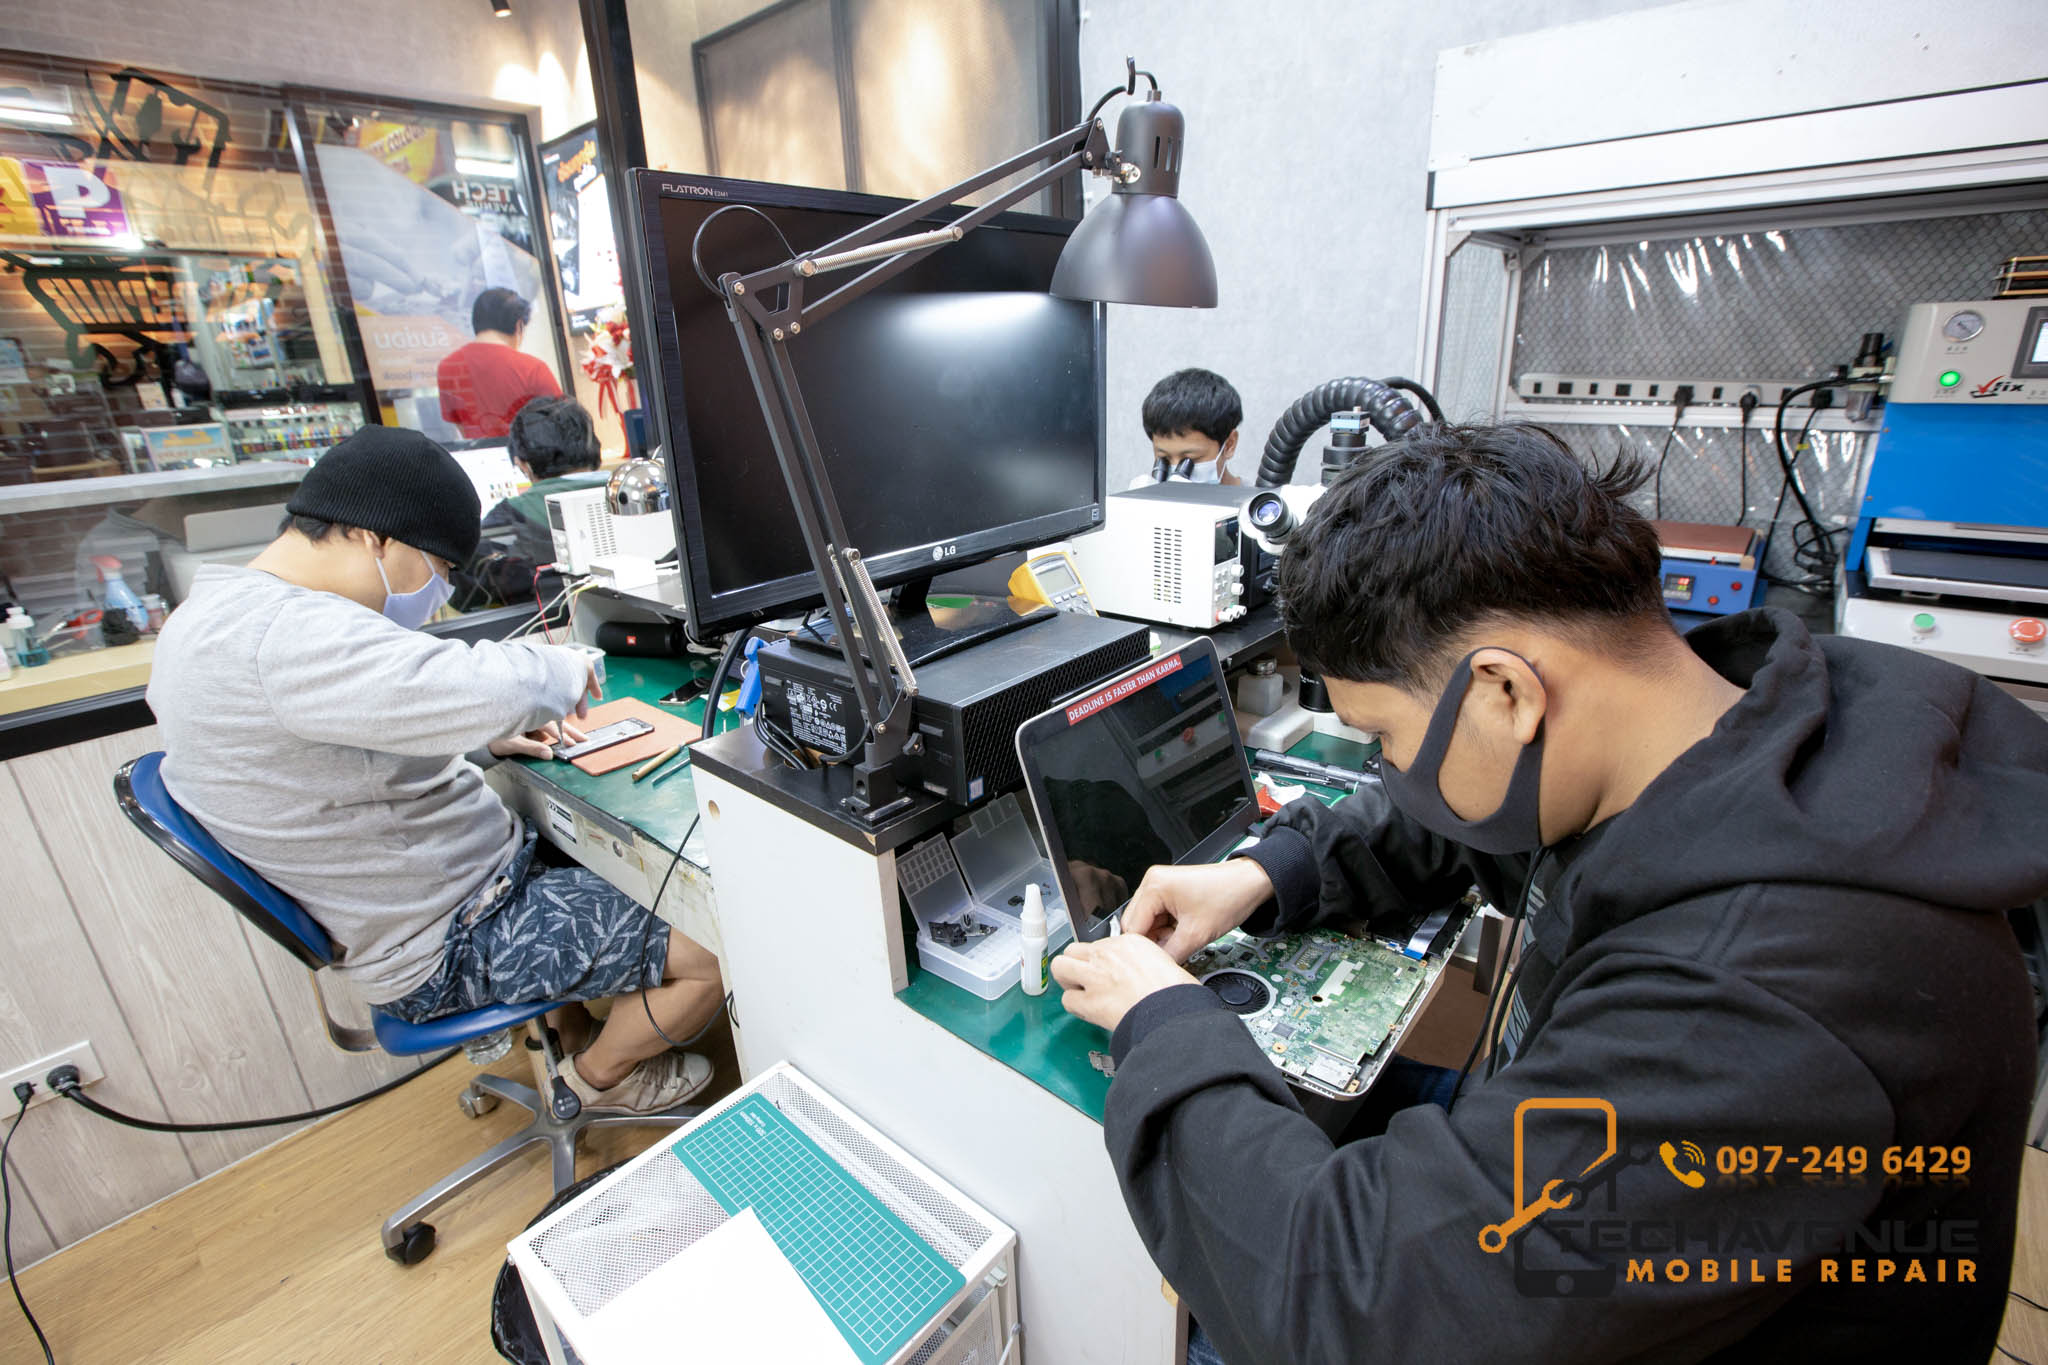 ร้านซ่อมมือถือ บางเขน รับ ส่ง ถึงบ้าน 🥇 ศูนย์ซ่อม โทรศัพท์มือถือ มือถือทุกรุ่น ทุกยี่ห้อ iPhone | Apple | Samsung | Huawei